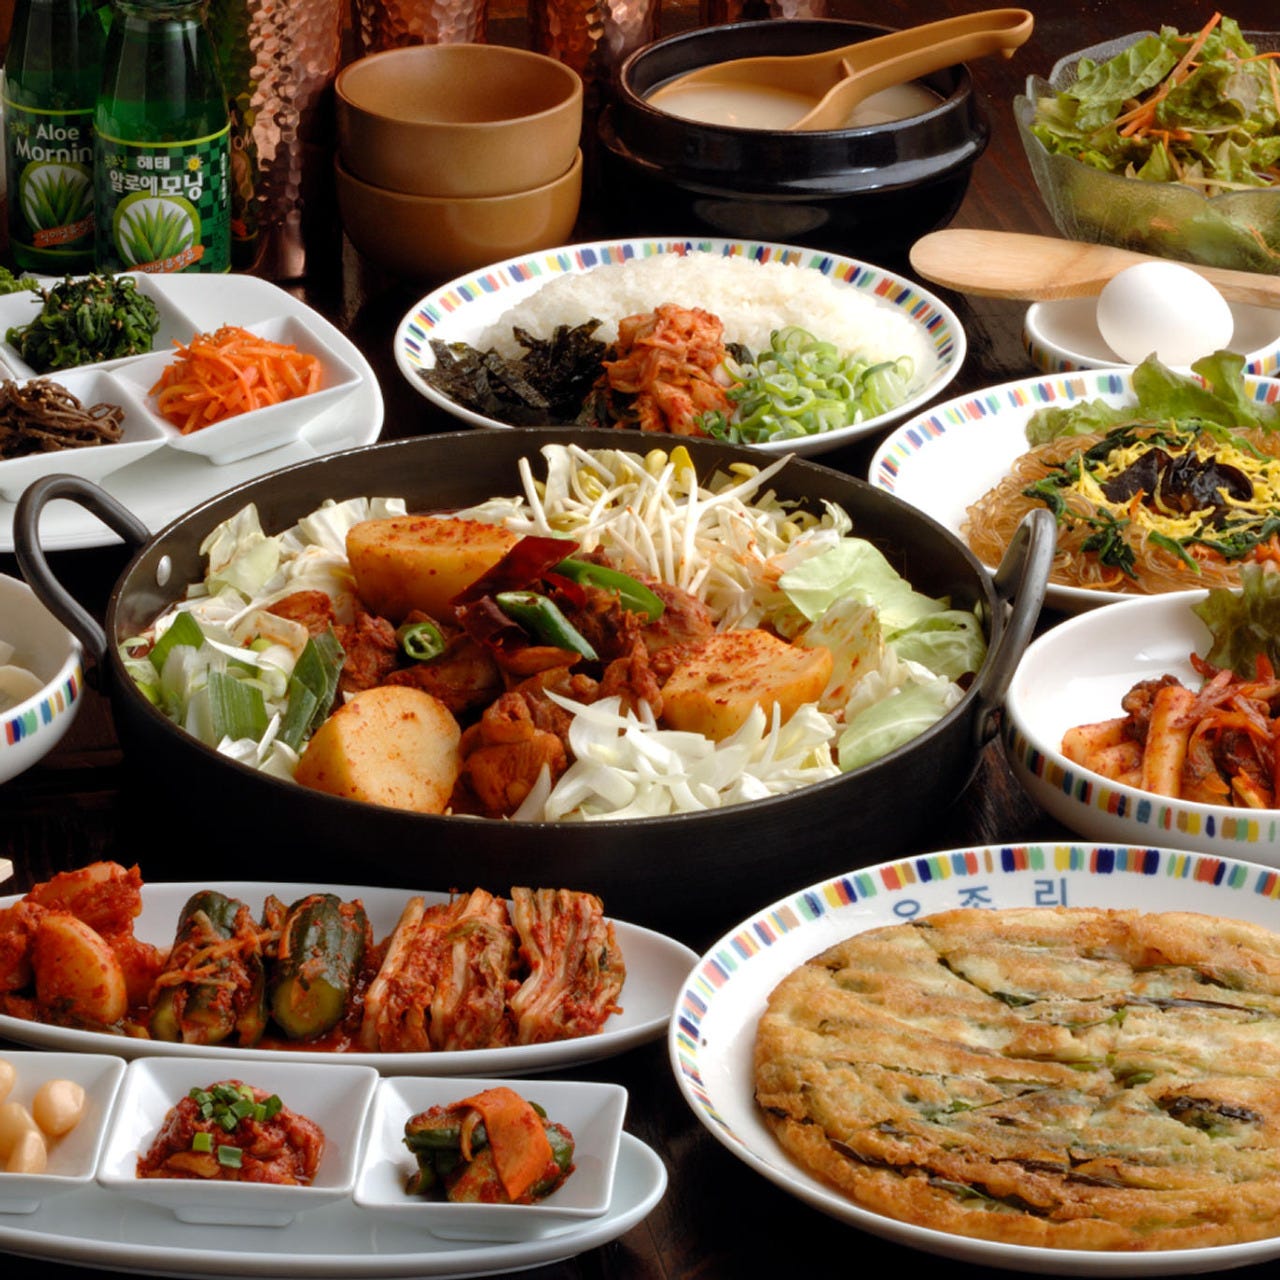 温かい鍋料理に沢山の韓国料理
とっても満足頂るコース構成です